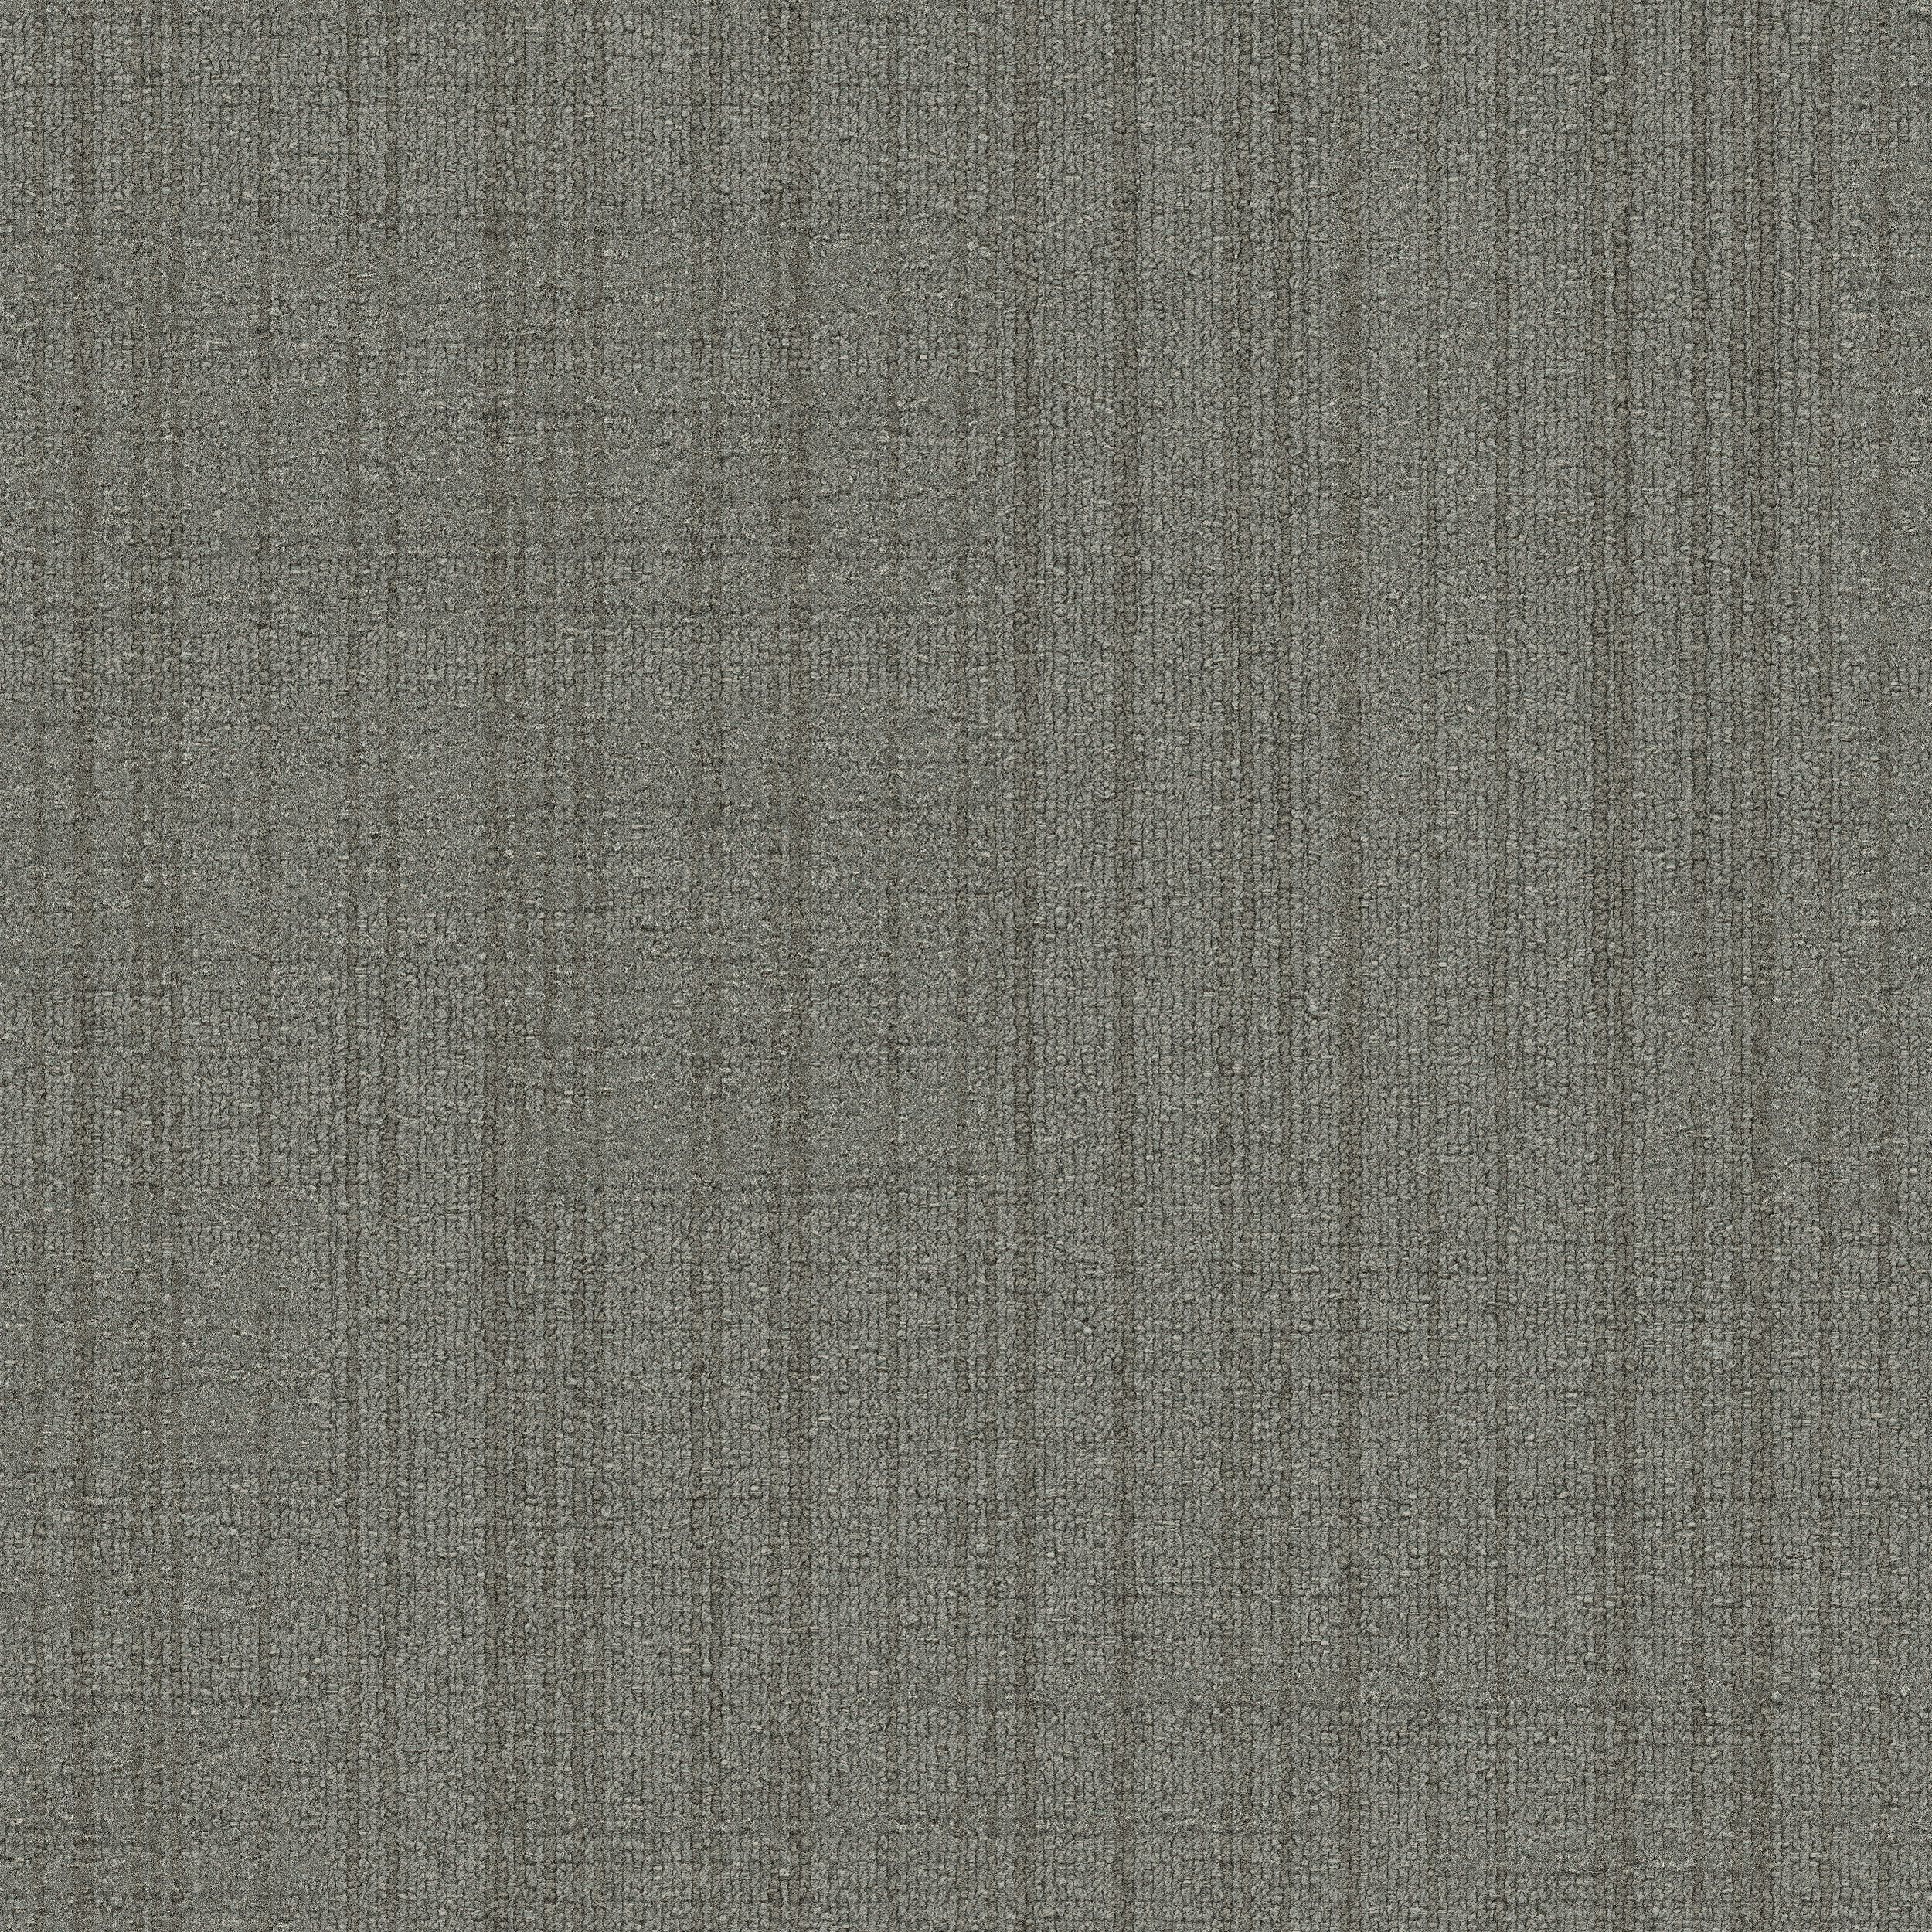 Striation Carpet Tile In Fog imagen número 1